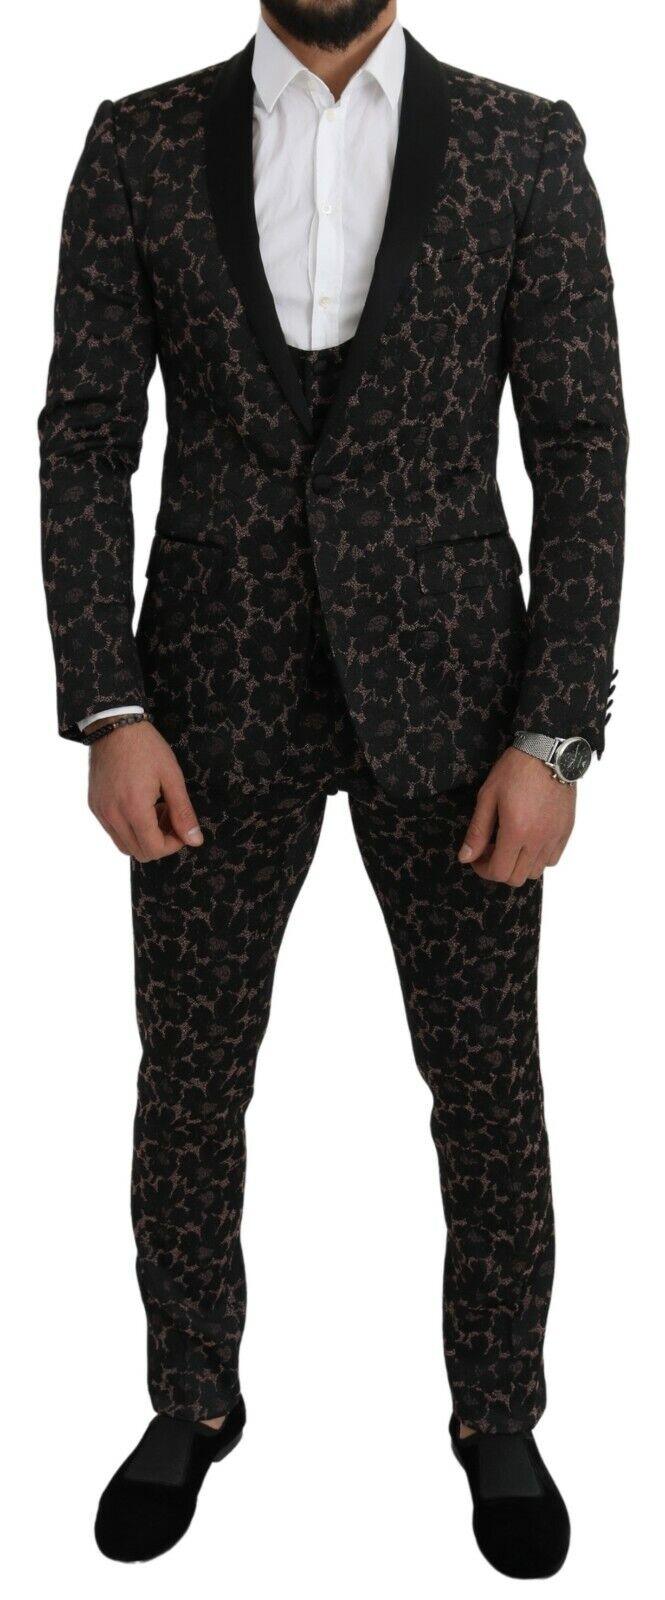 Dolce & Gabbana Suit Black Floral 3 Piece Slim Tuxedo - Ellie Belle